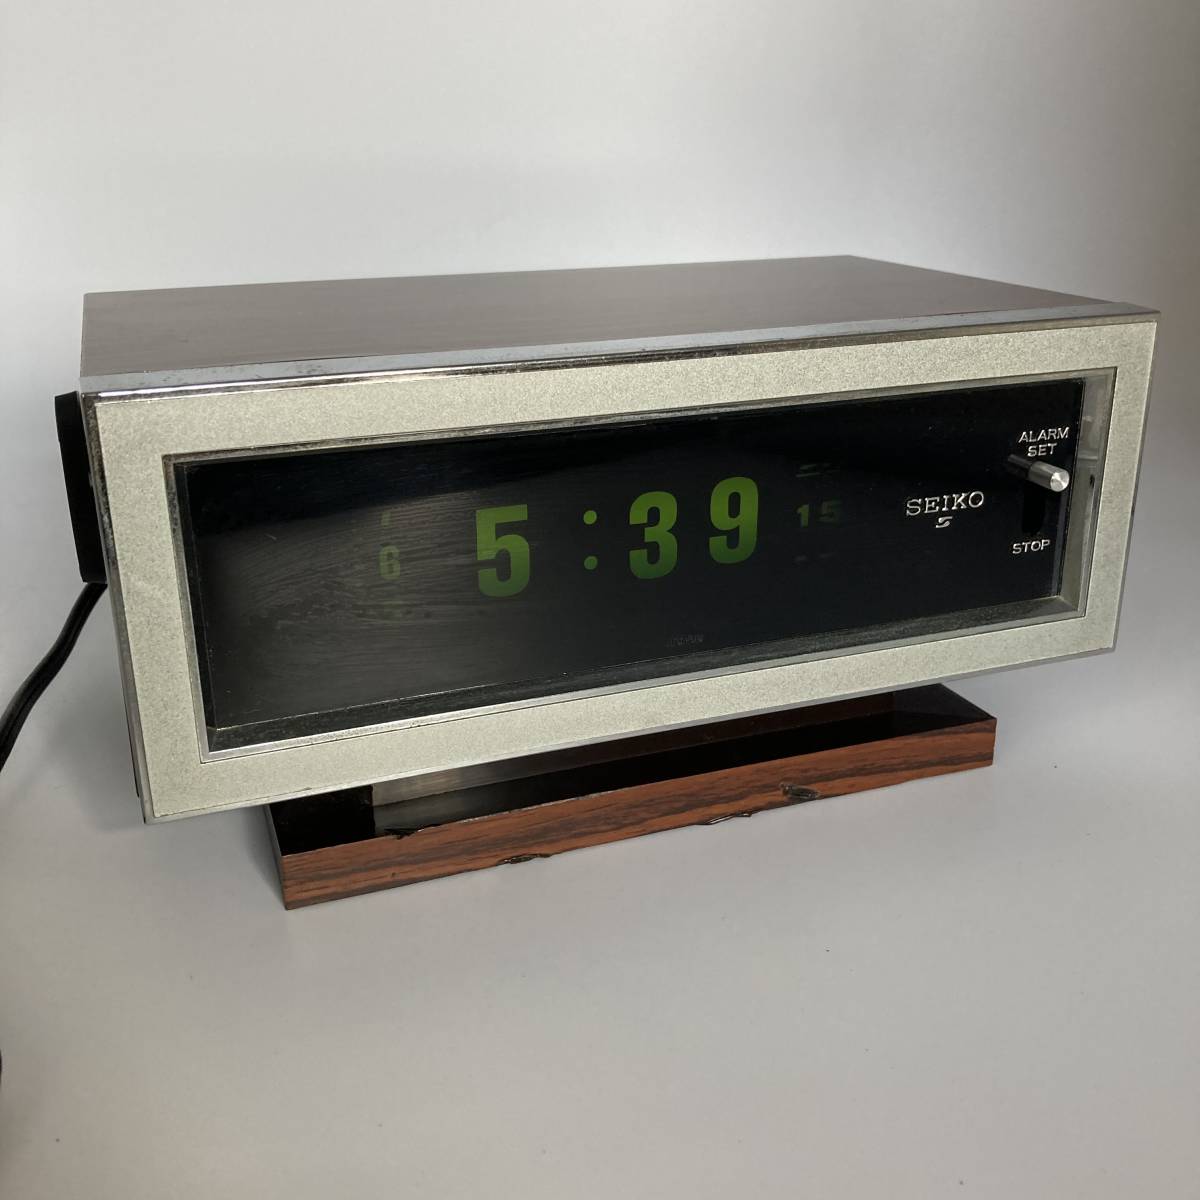 SEIKOのデジタル時計 レトロ風-